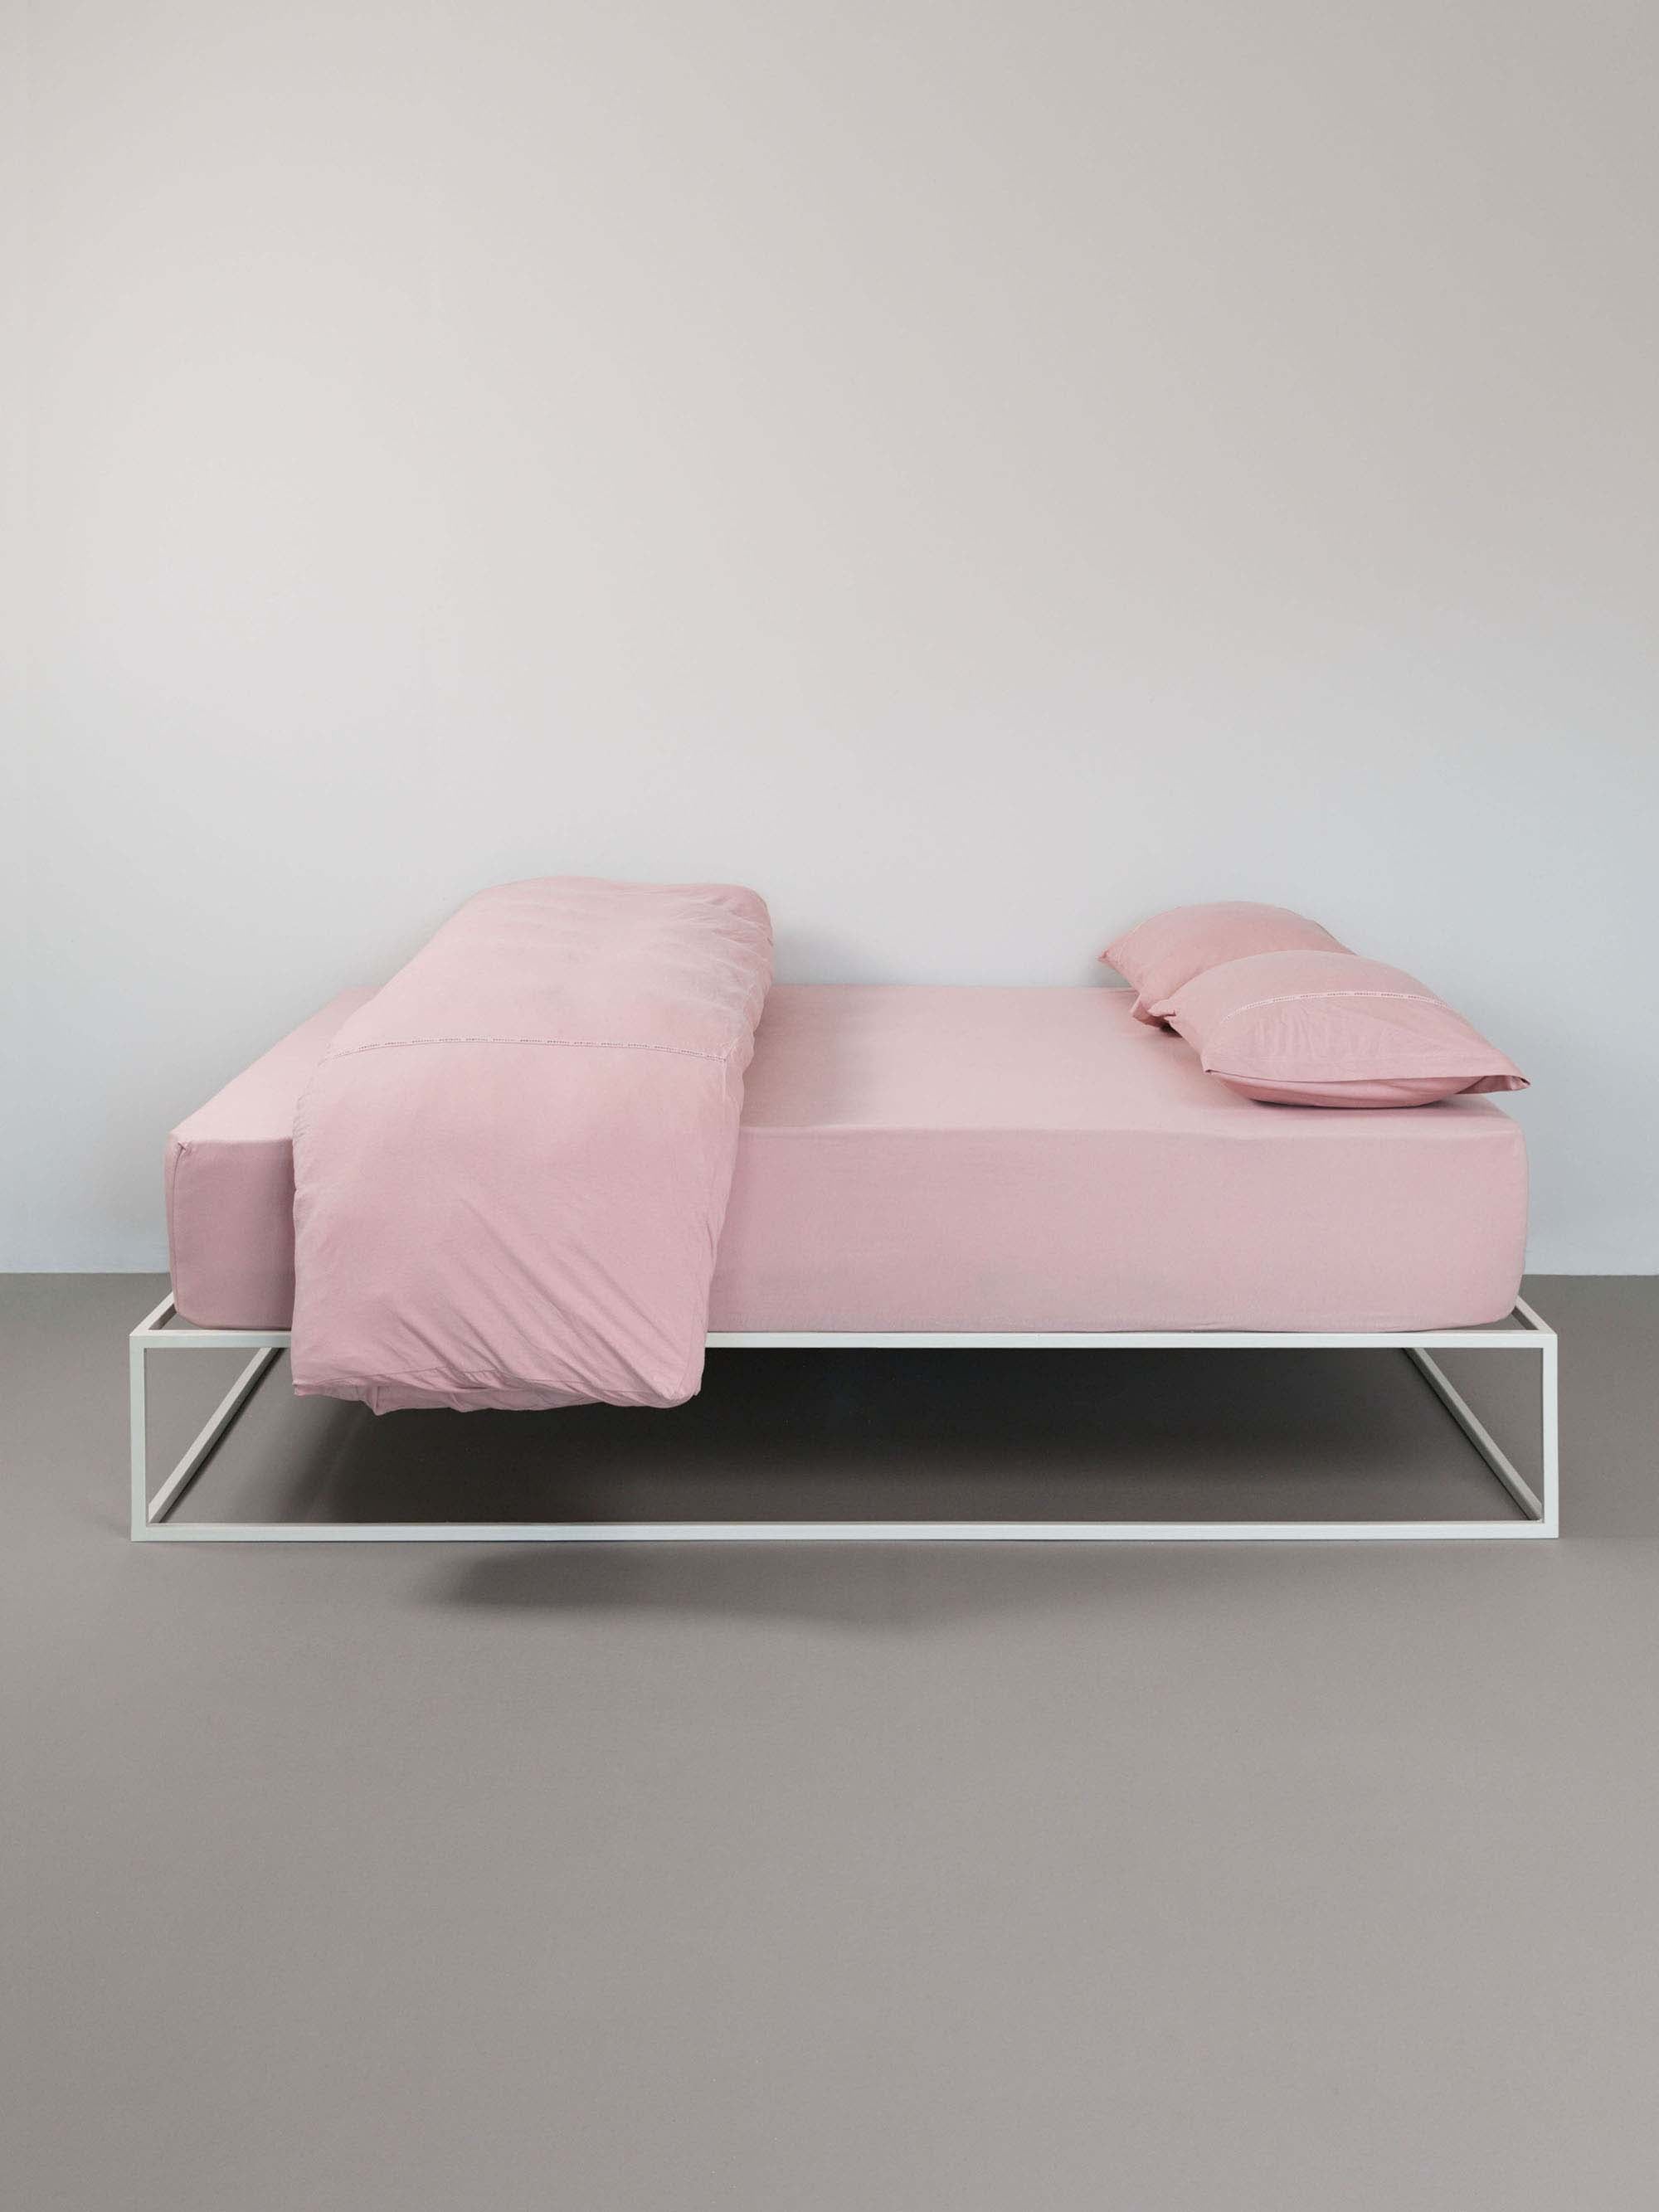 מיטת ברזל לבנה מסודרת עם סדין, שמיכה מקופלת כריות וציפיות לכריות בצבע ורוד